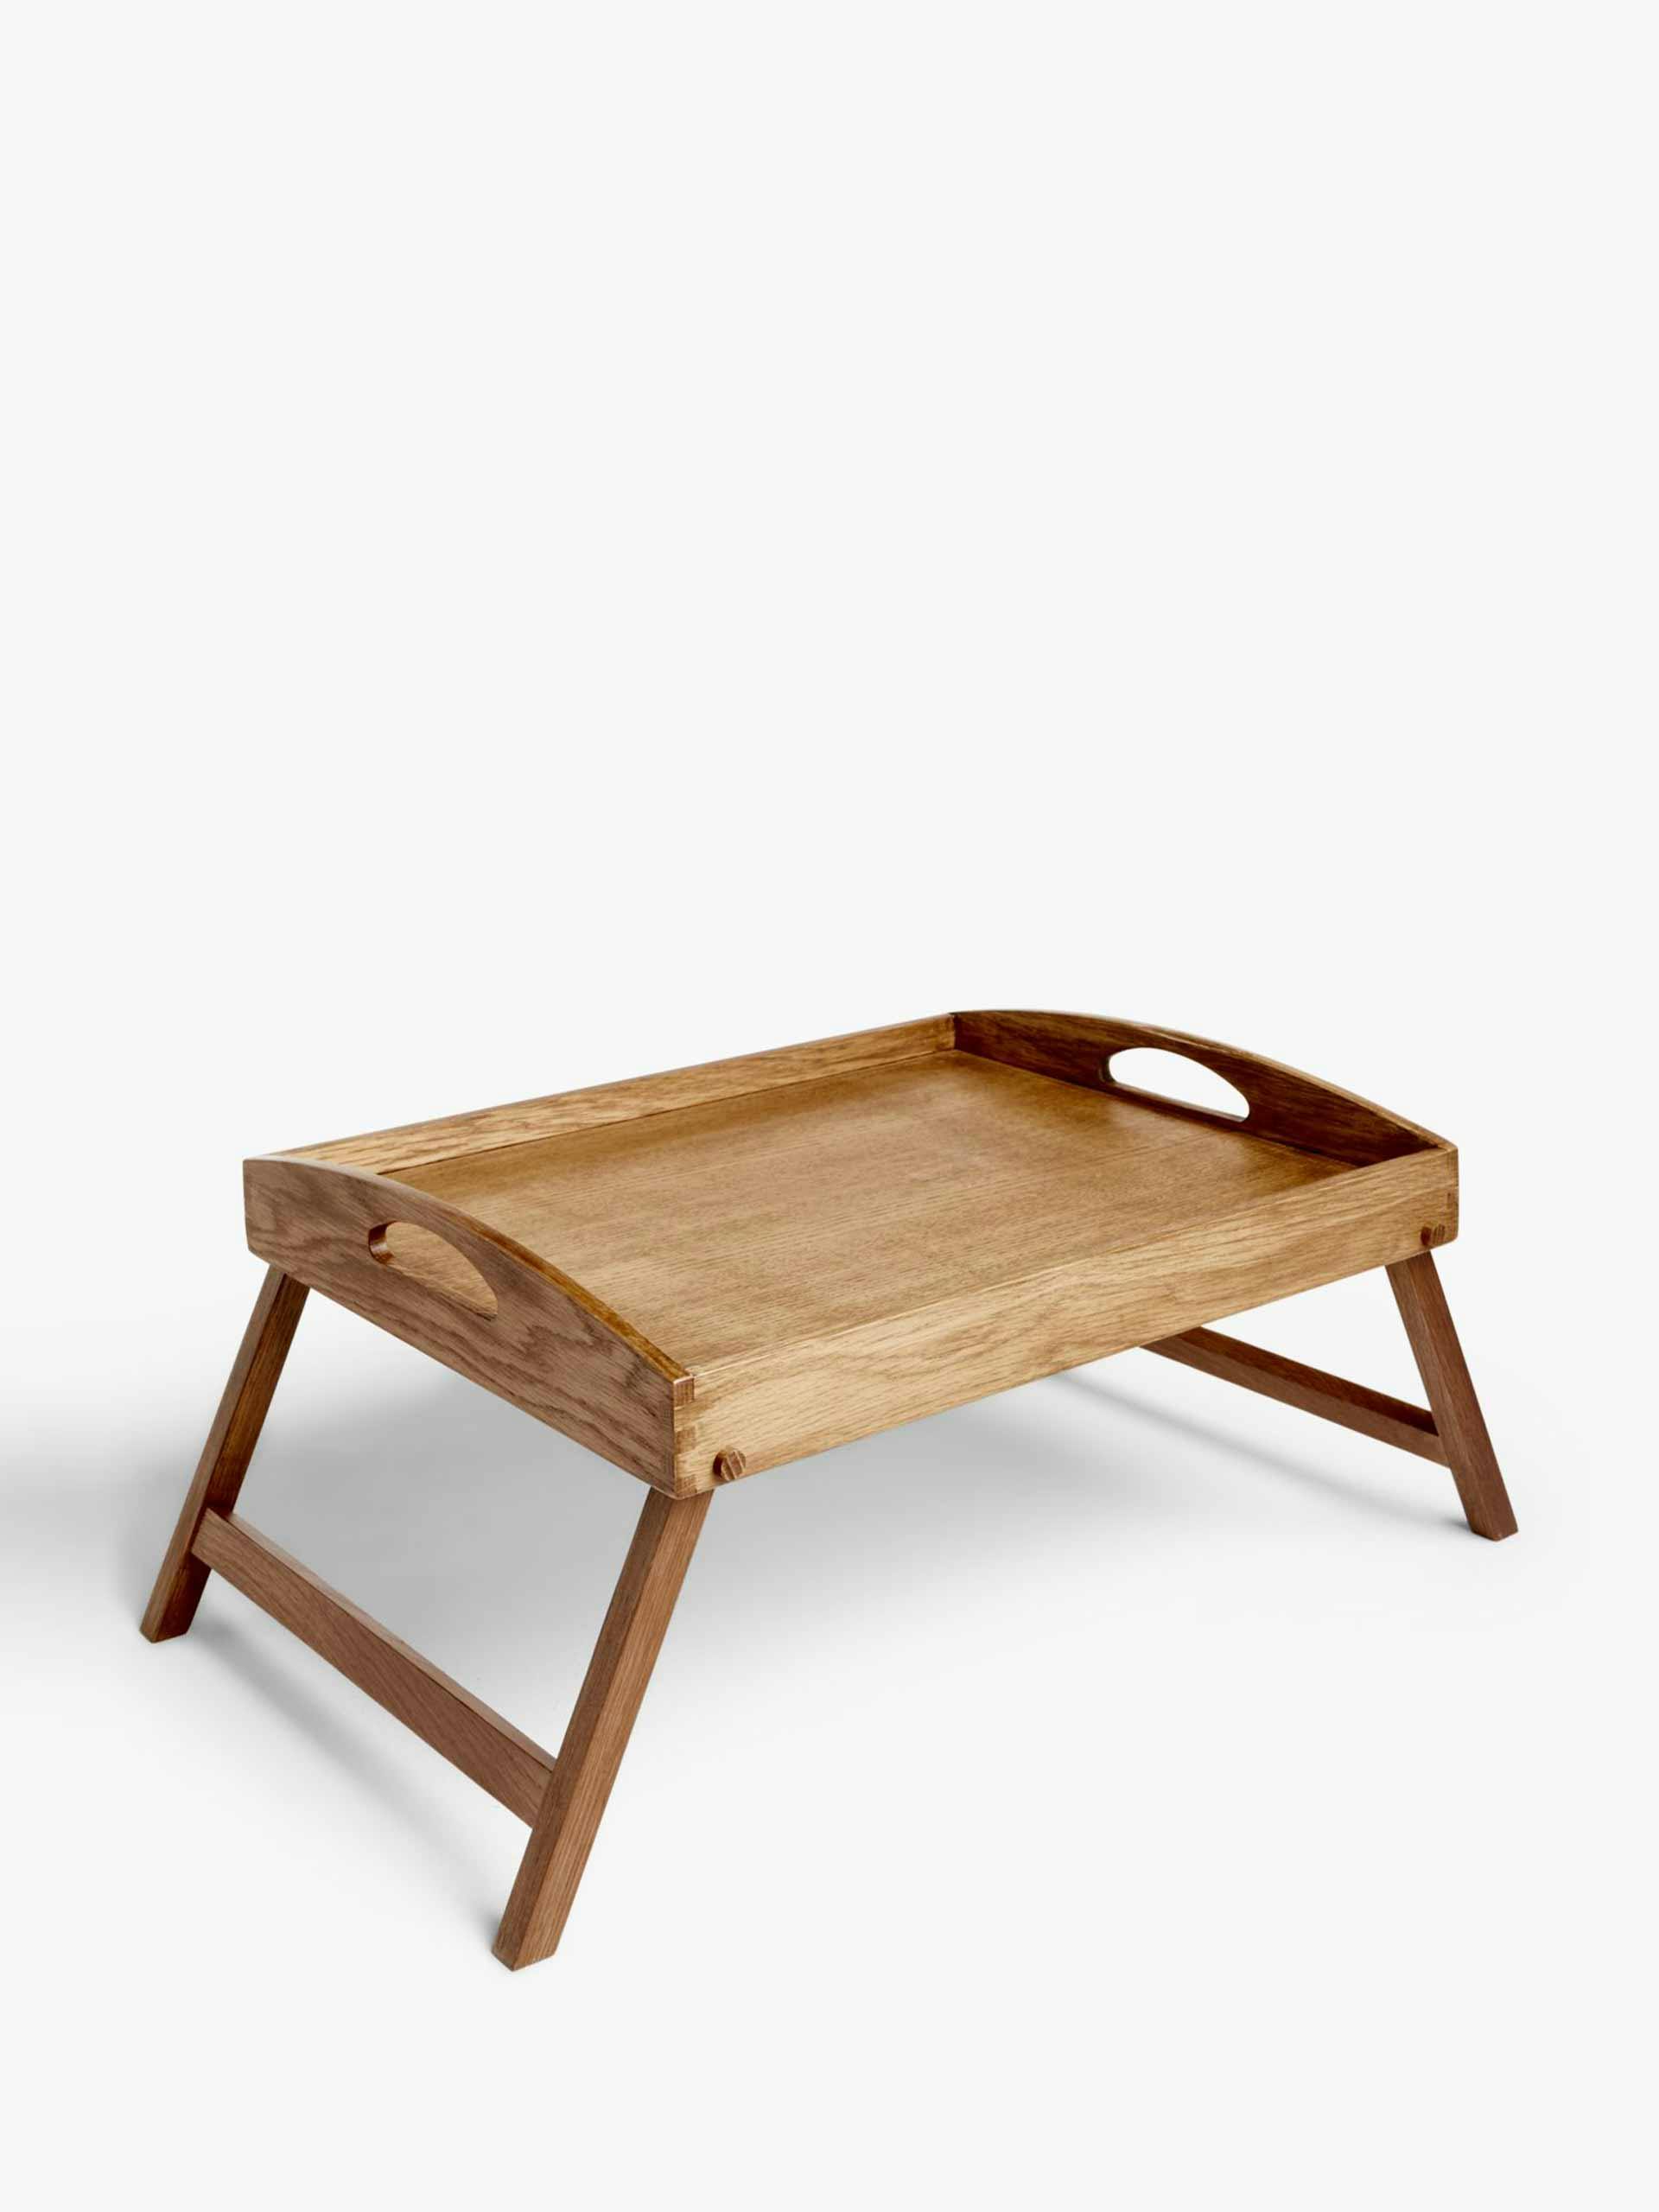 Oak wood folding bed tray